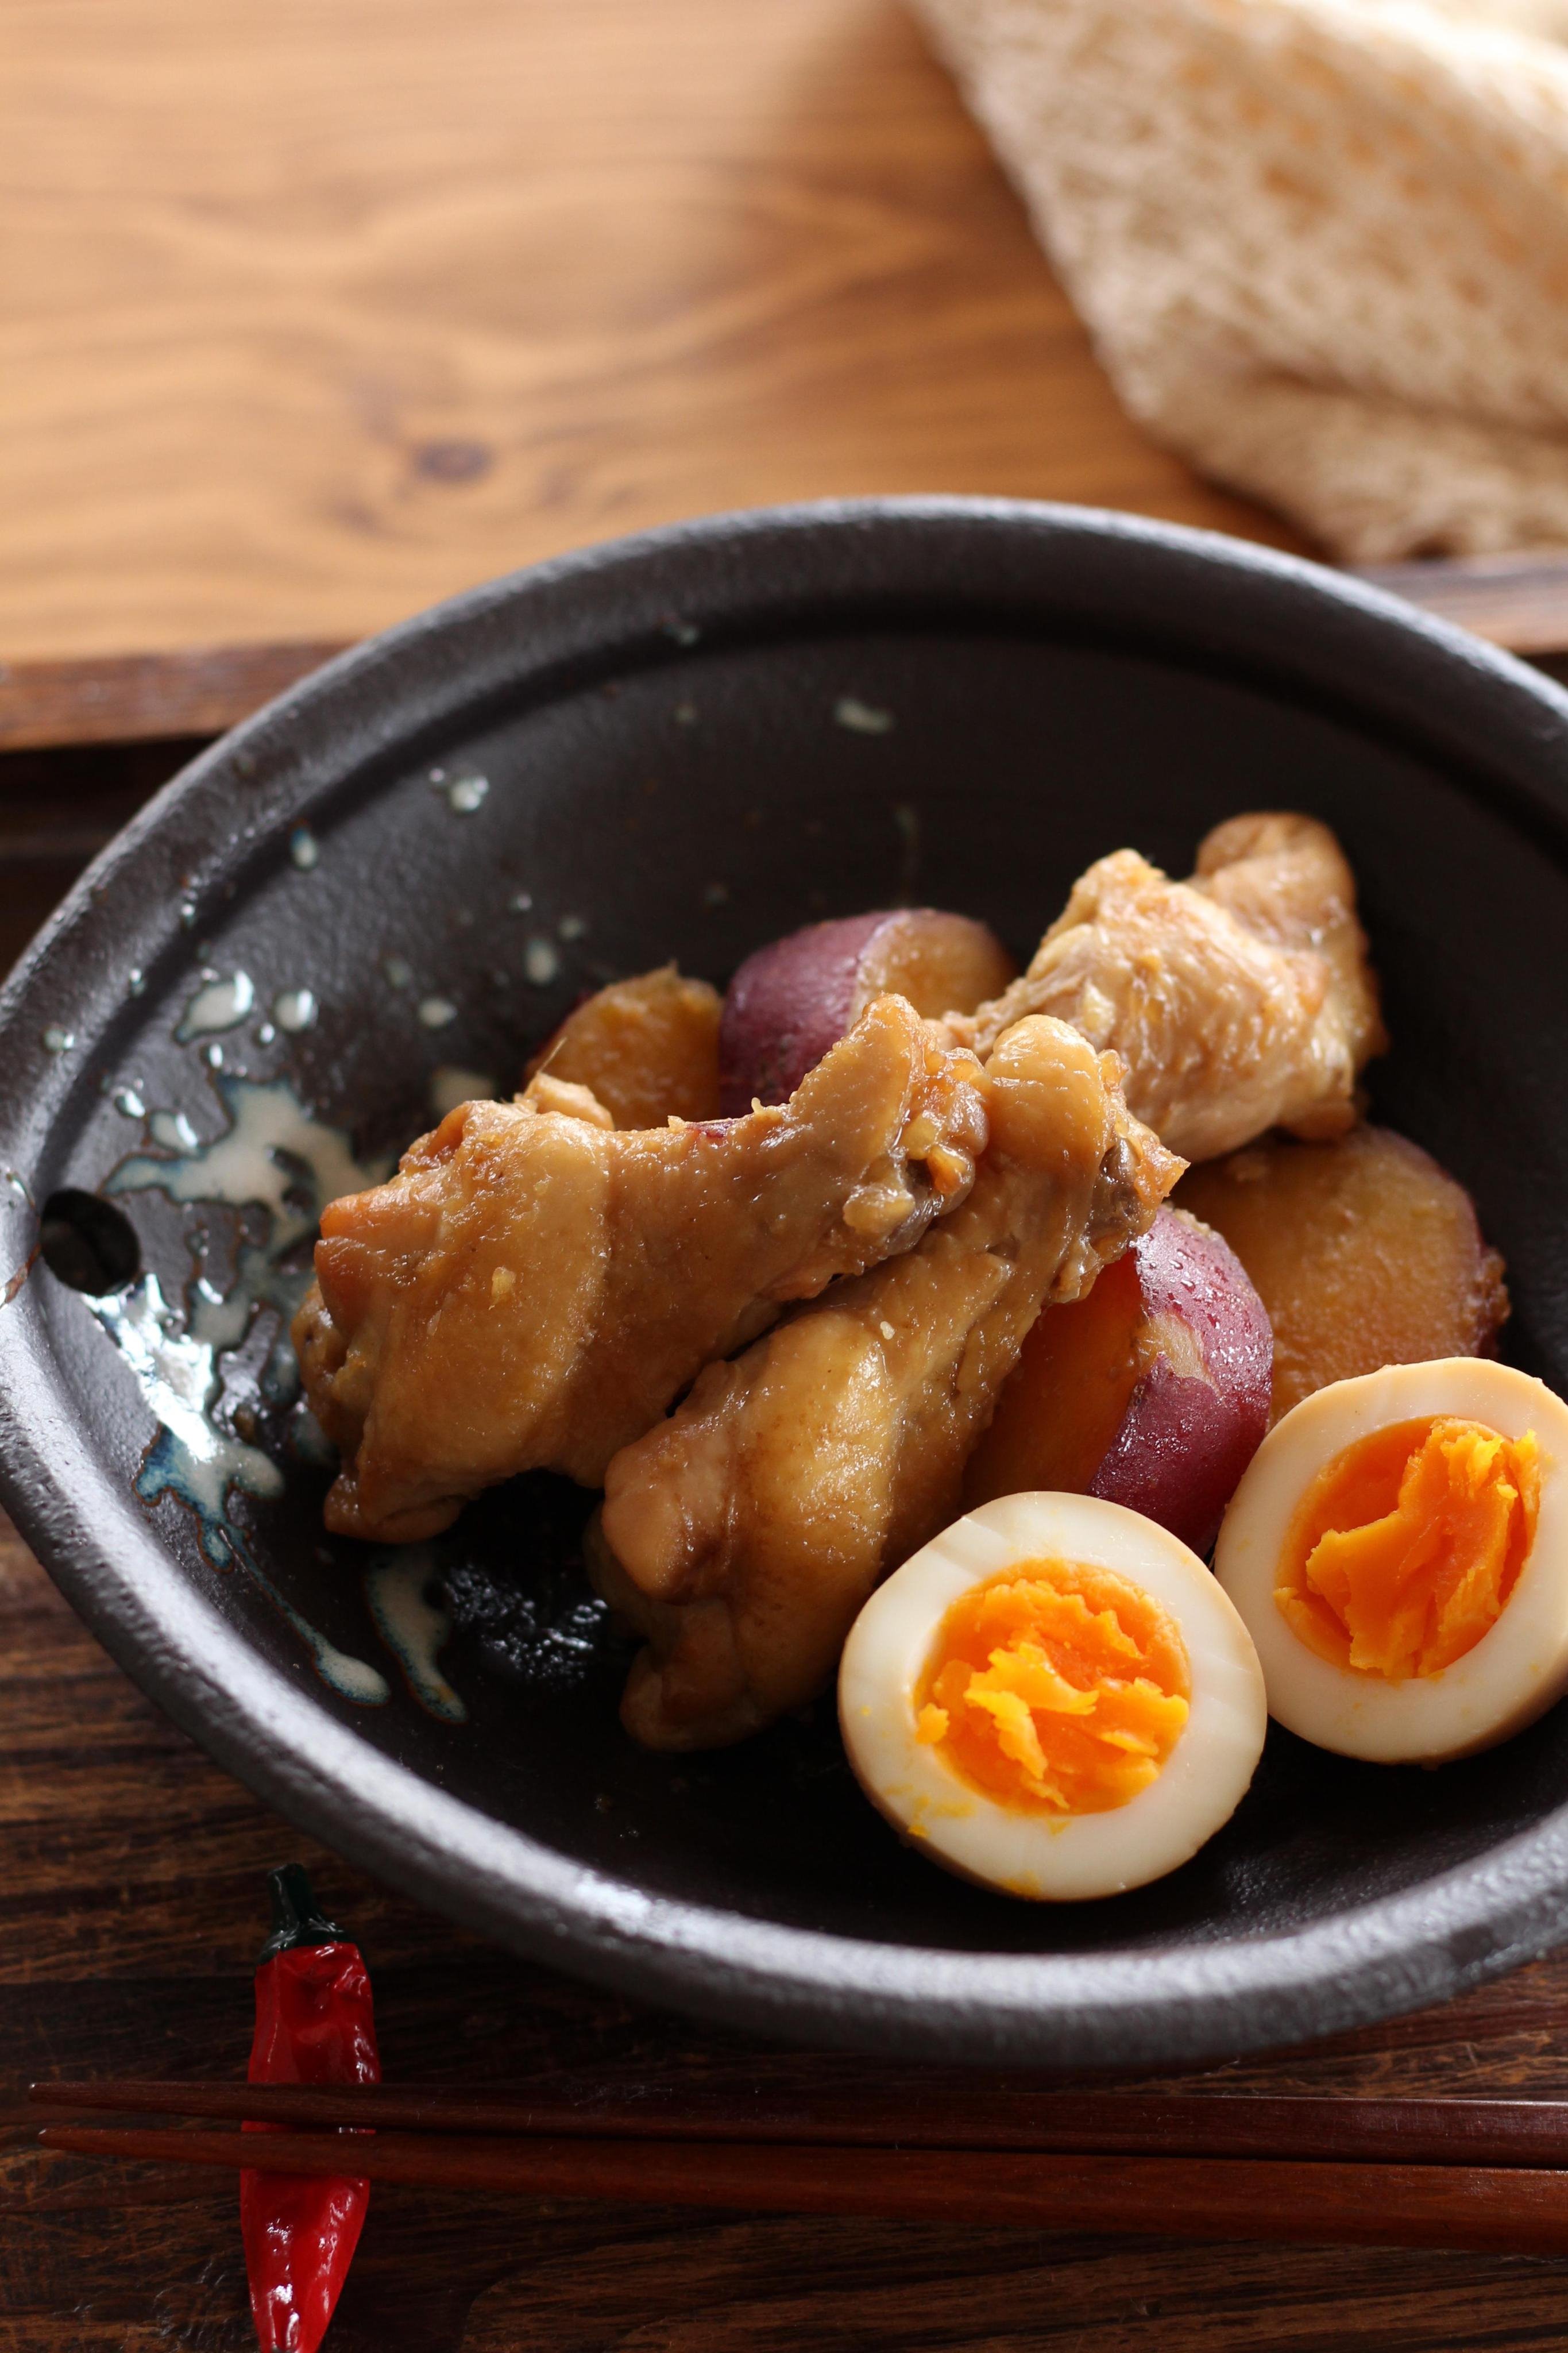 鶏手羽元とさつま芋の甘辛煮のレシピ 作り方 貞本 紘子 料理教室検索サイト クスパ